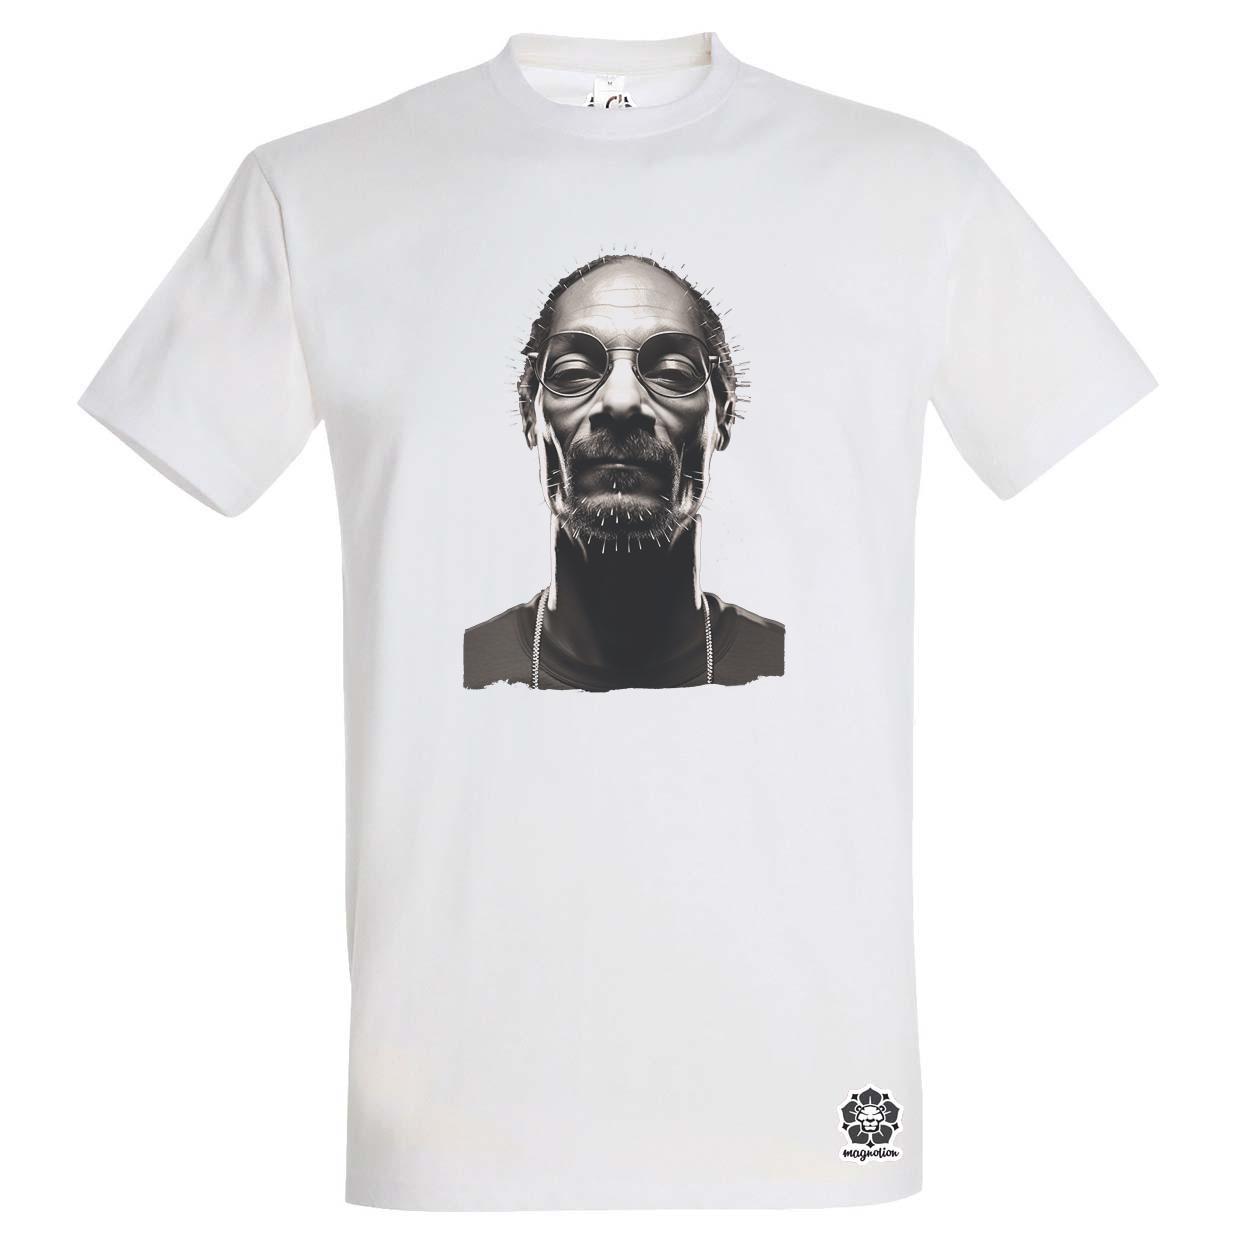 Snoop Dogg v2